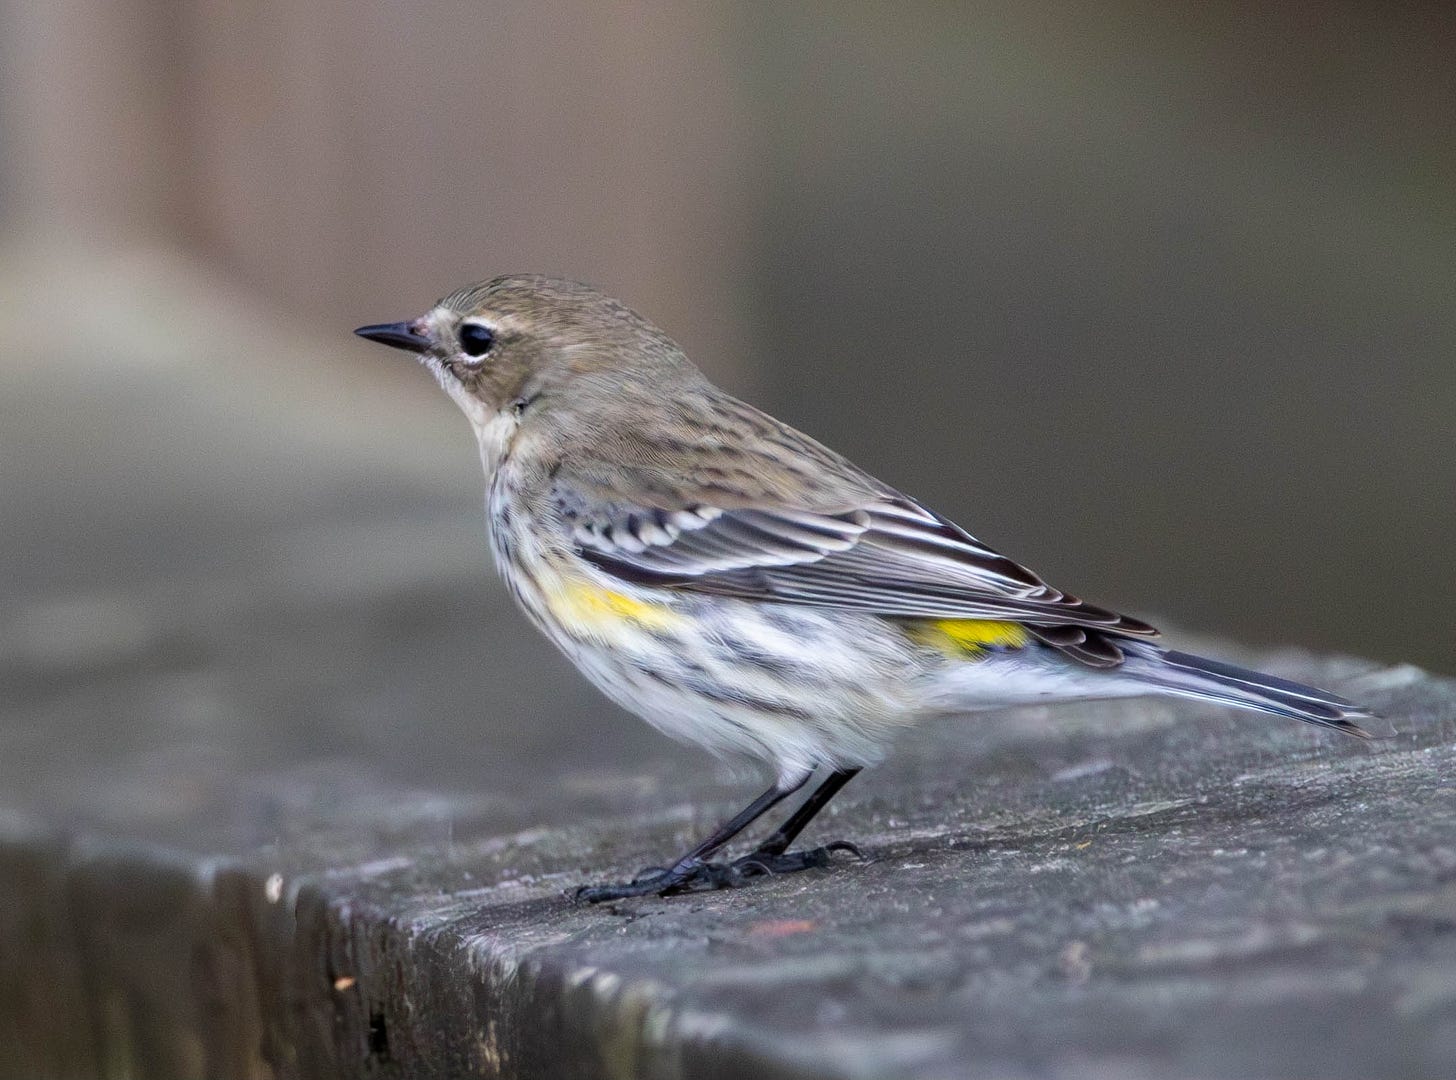 a yellow-rumped warbler pierced on the boardwalk handrail